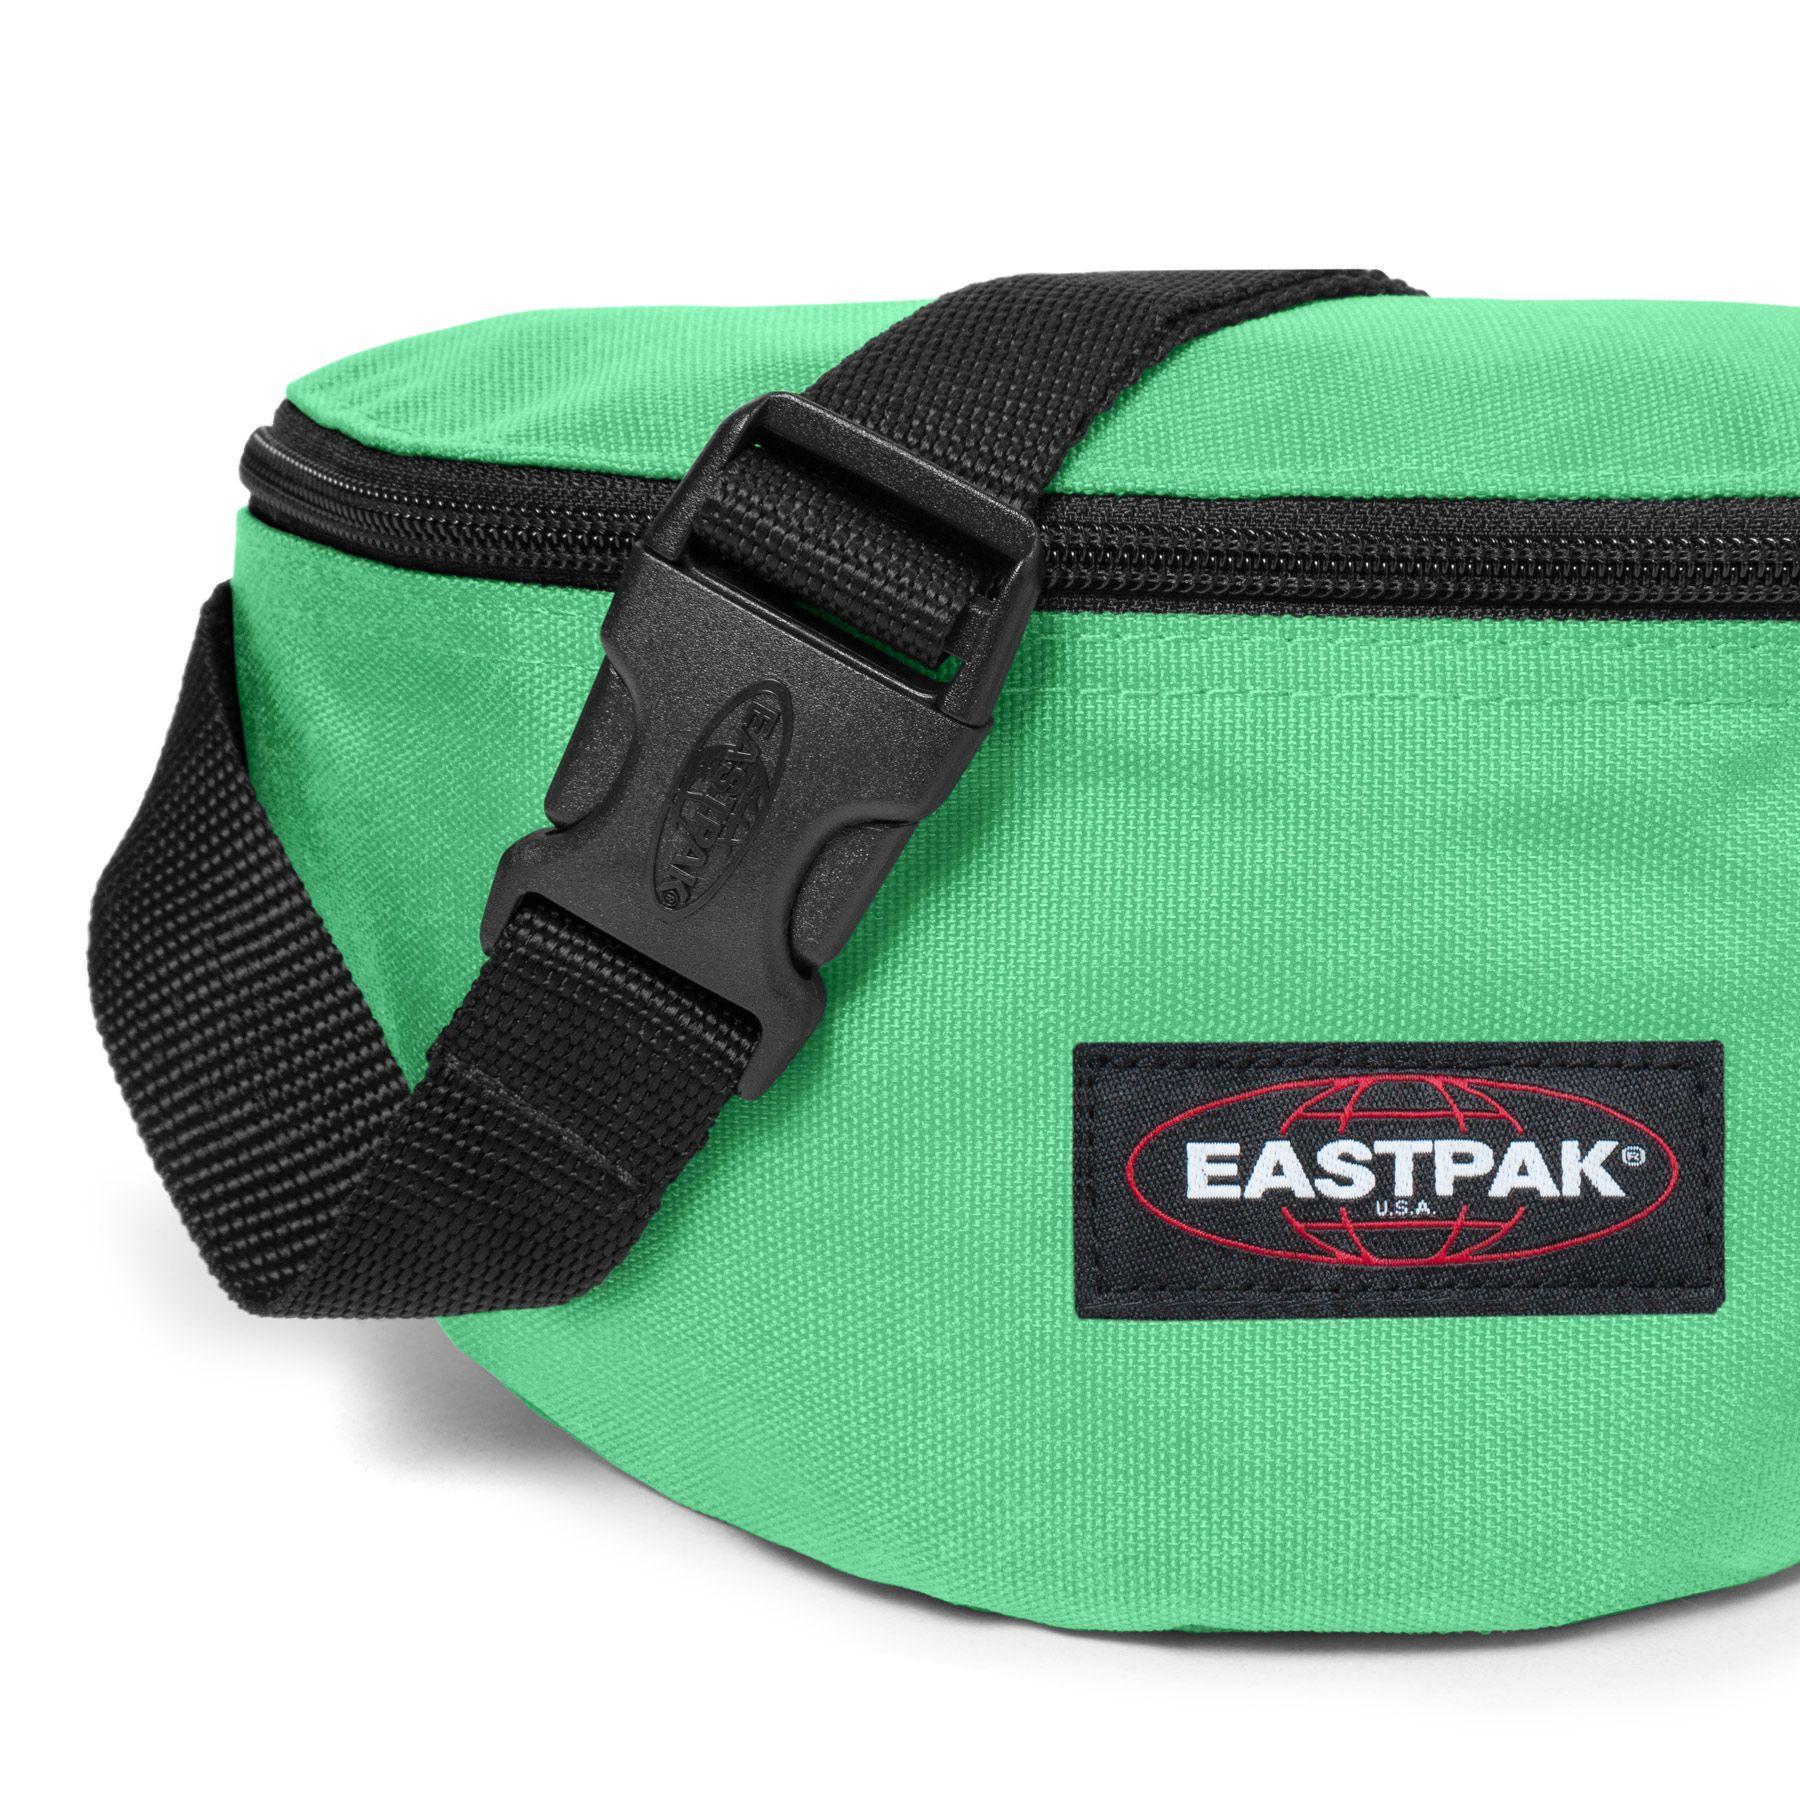 Comprar eastpak springer clover green K29 online